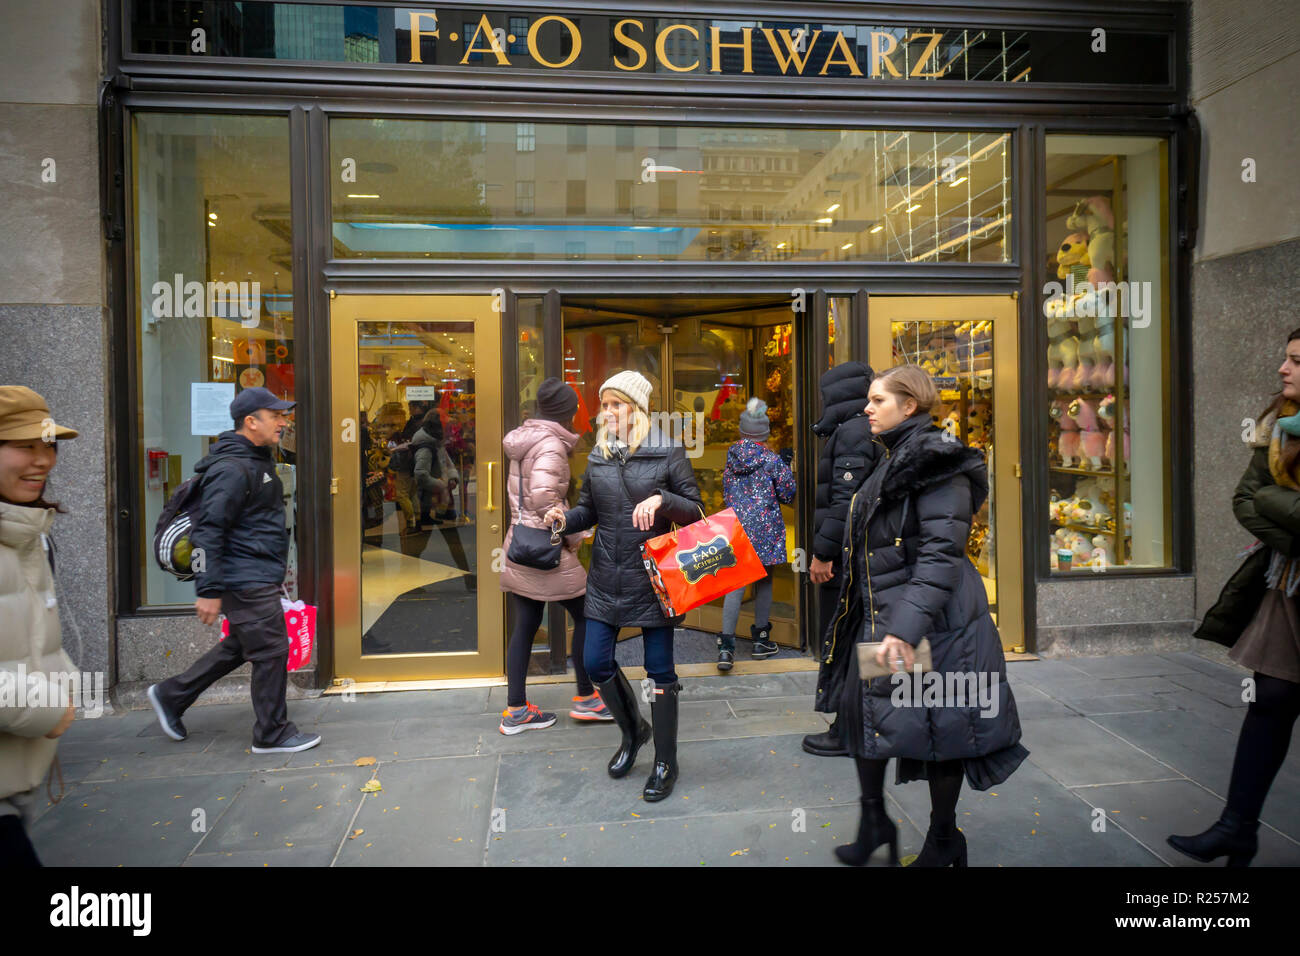 New York, USA. 16 novembre 2018. En dehors de l'emporium shopping jouet FAO  Schwarz, vu sur la grande ouverture, vendredi 16 novembre, 2018. Trois ans  après avoir fermé ses portes sur la